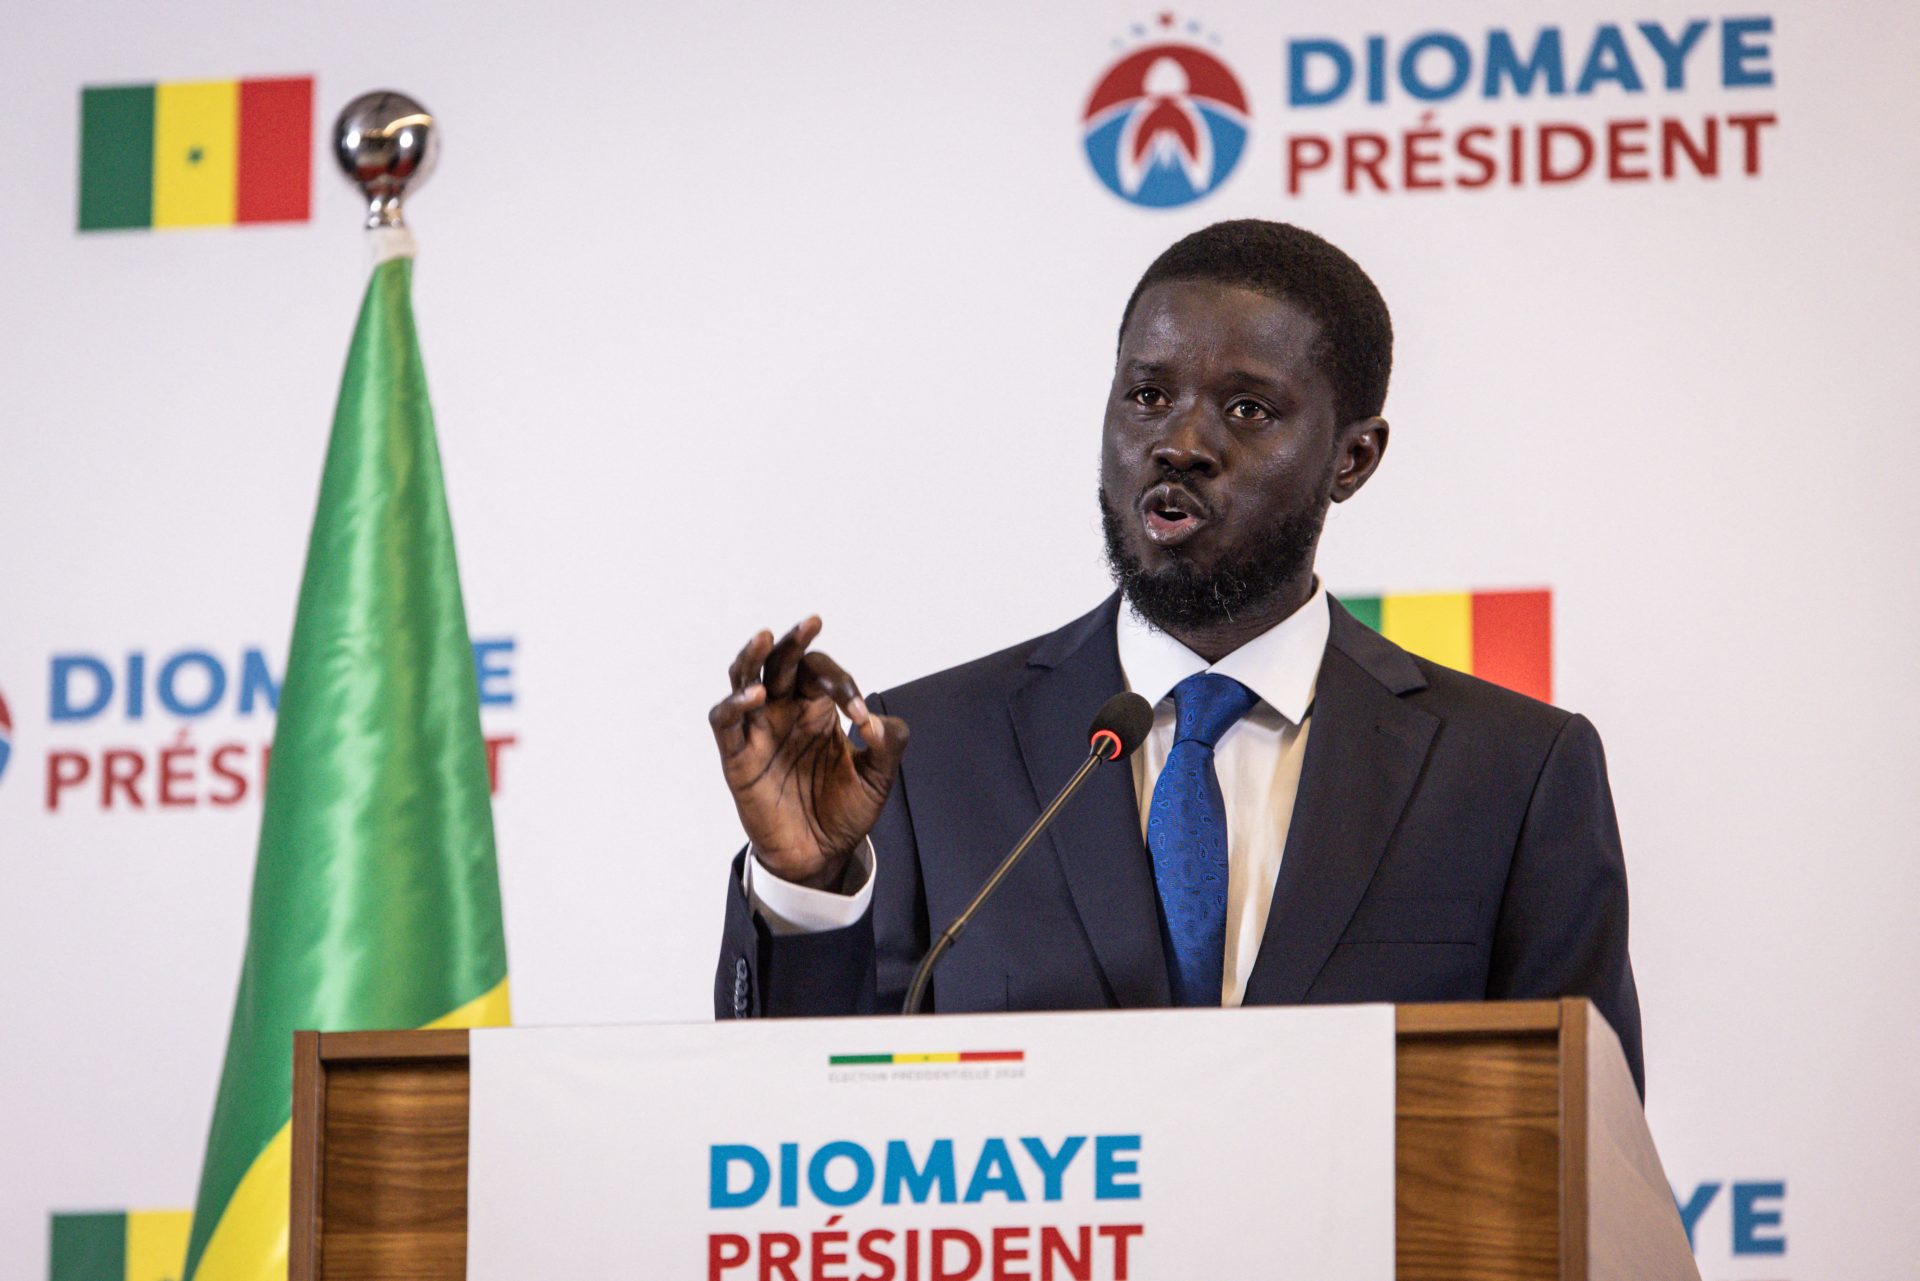 Le vainqueur inattendu de la présidence sénégalaise